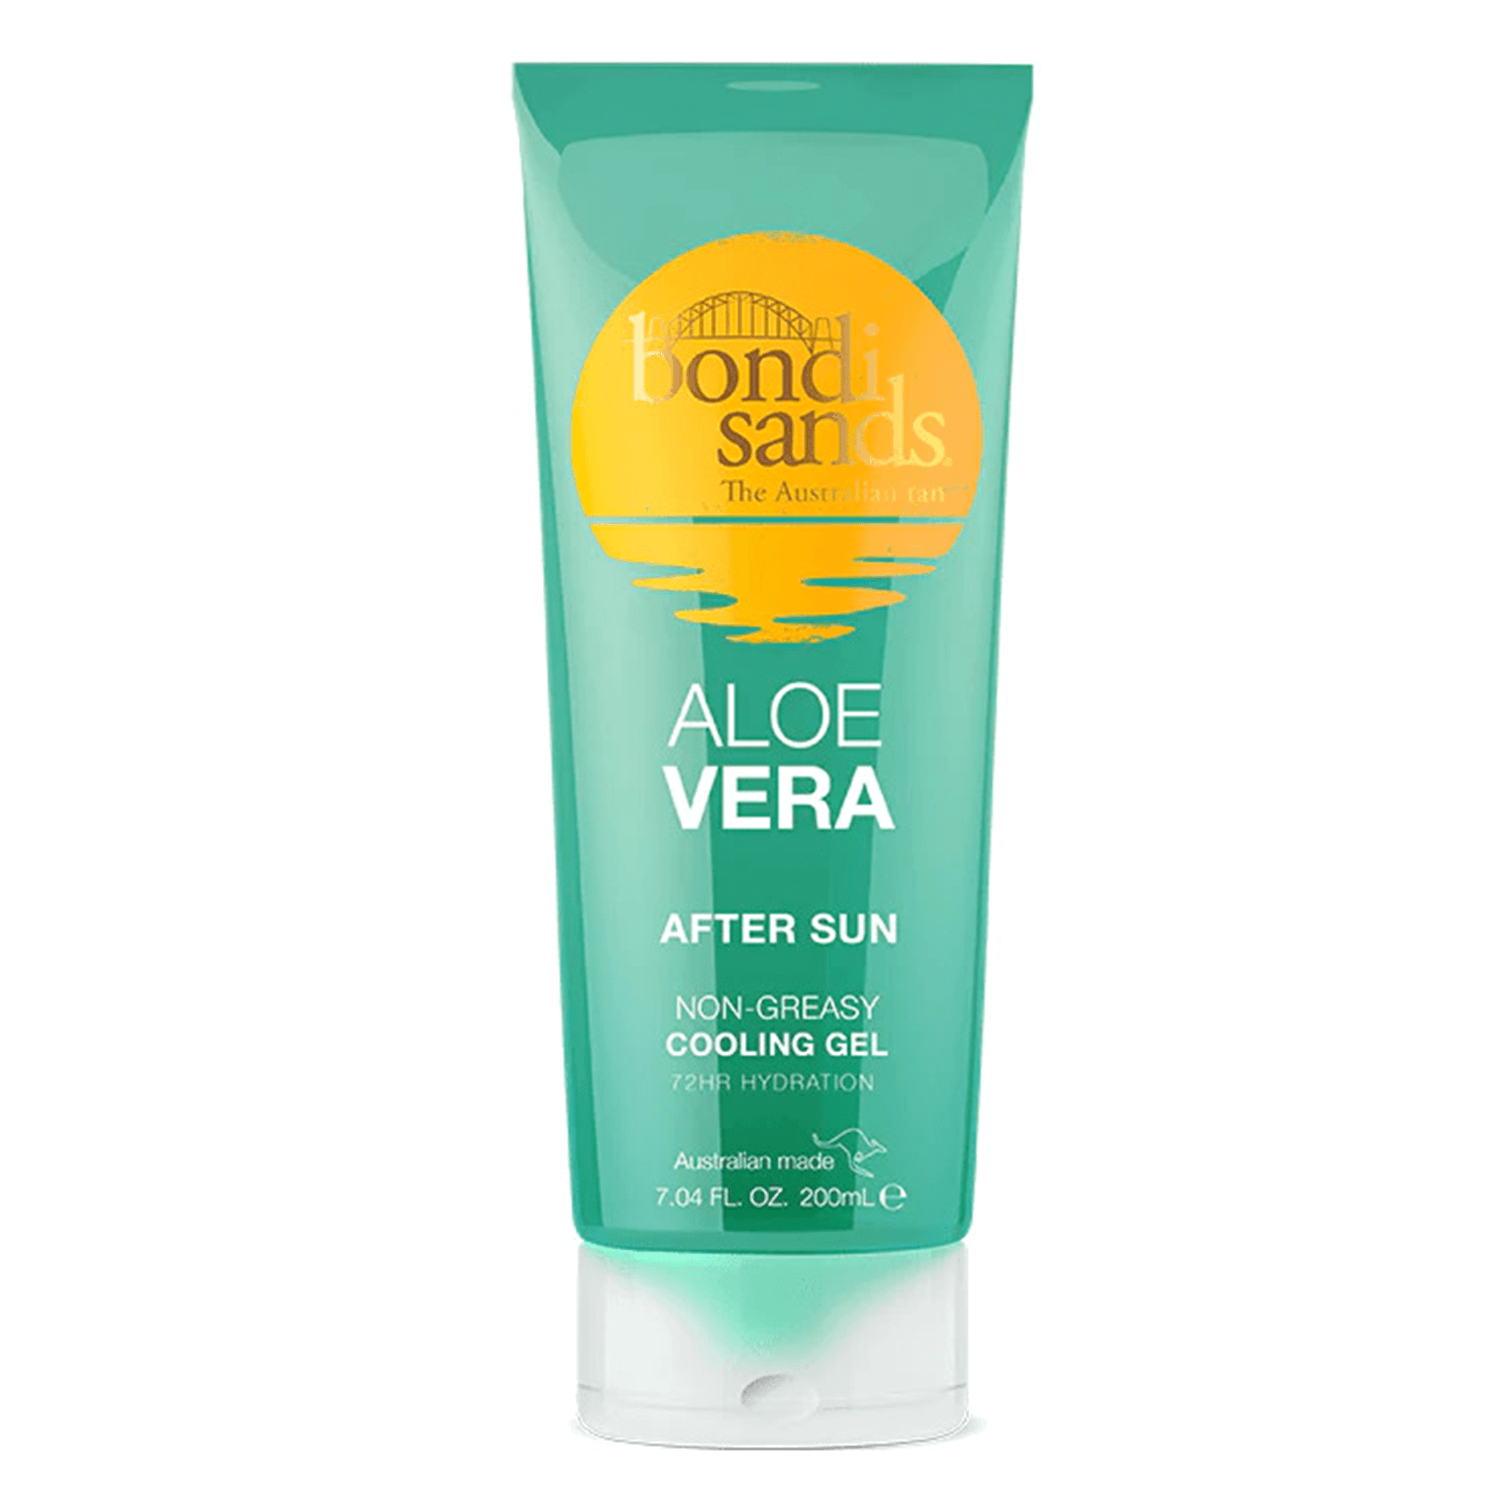 Produktbild von Aftersun - Bondi Sands Aloe Vera Aftersun Gel